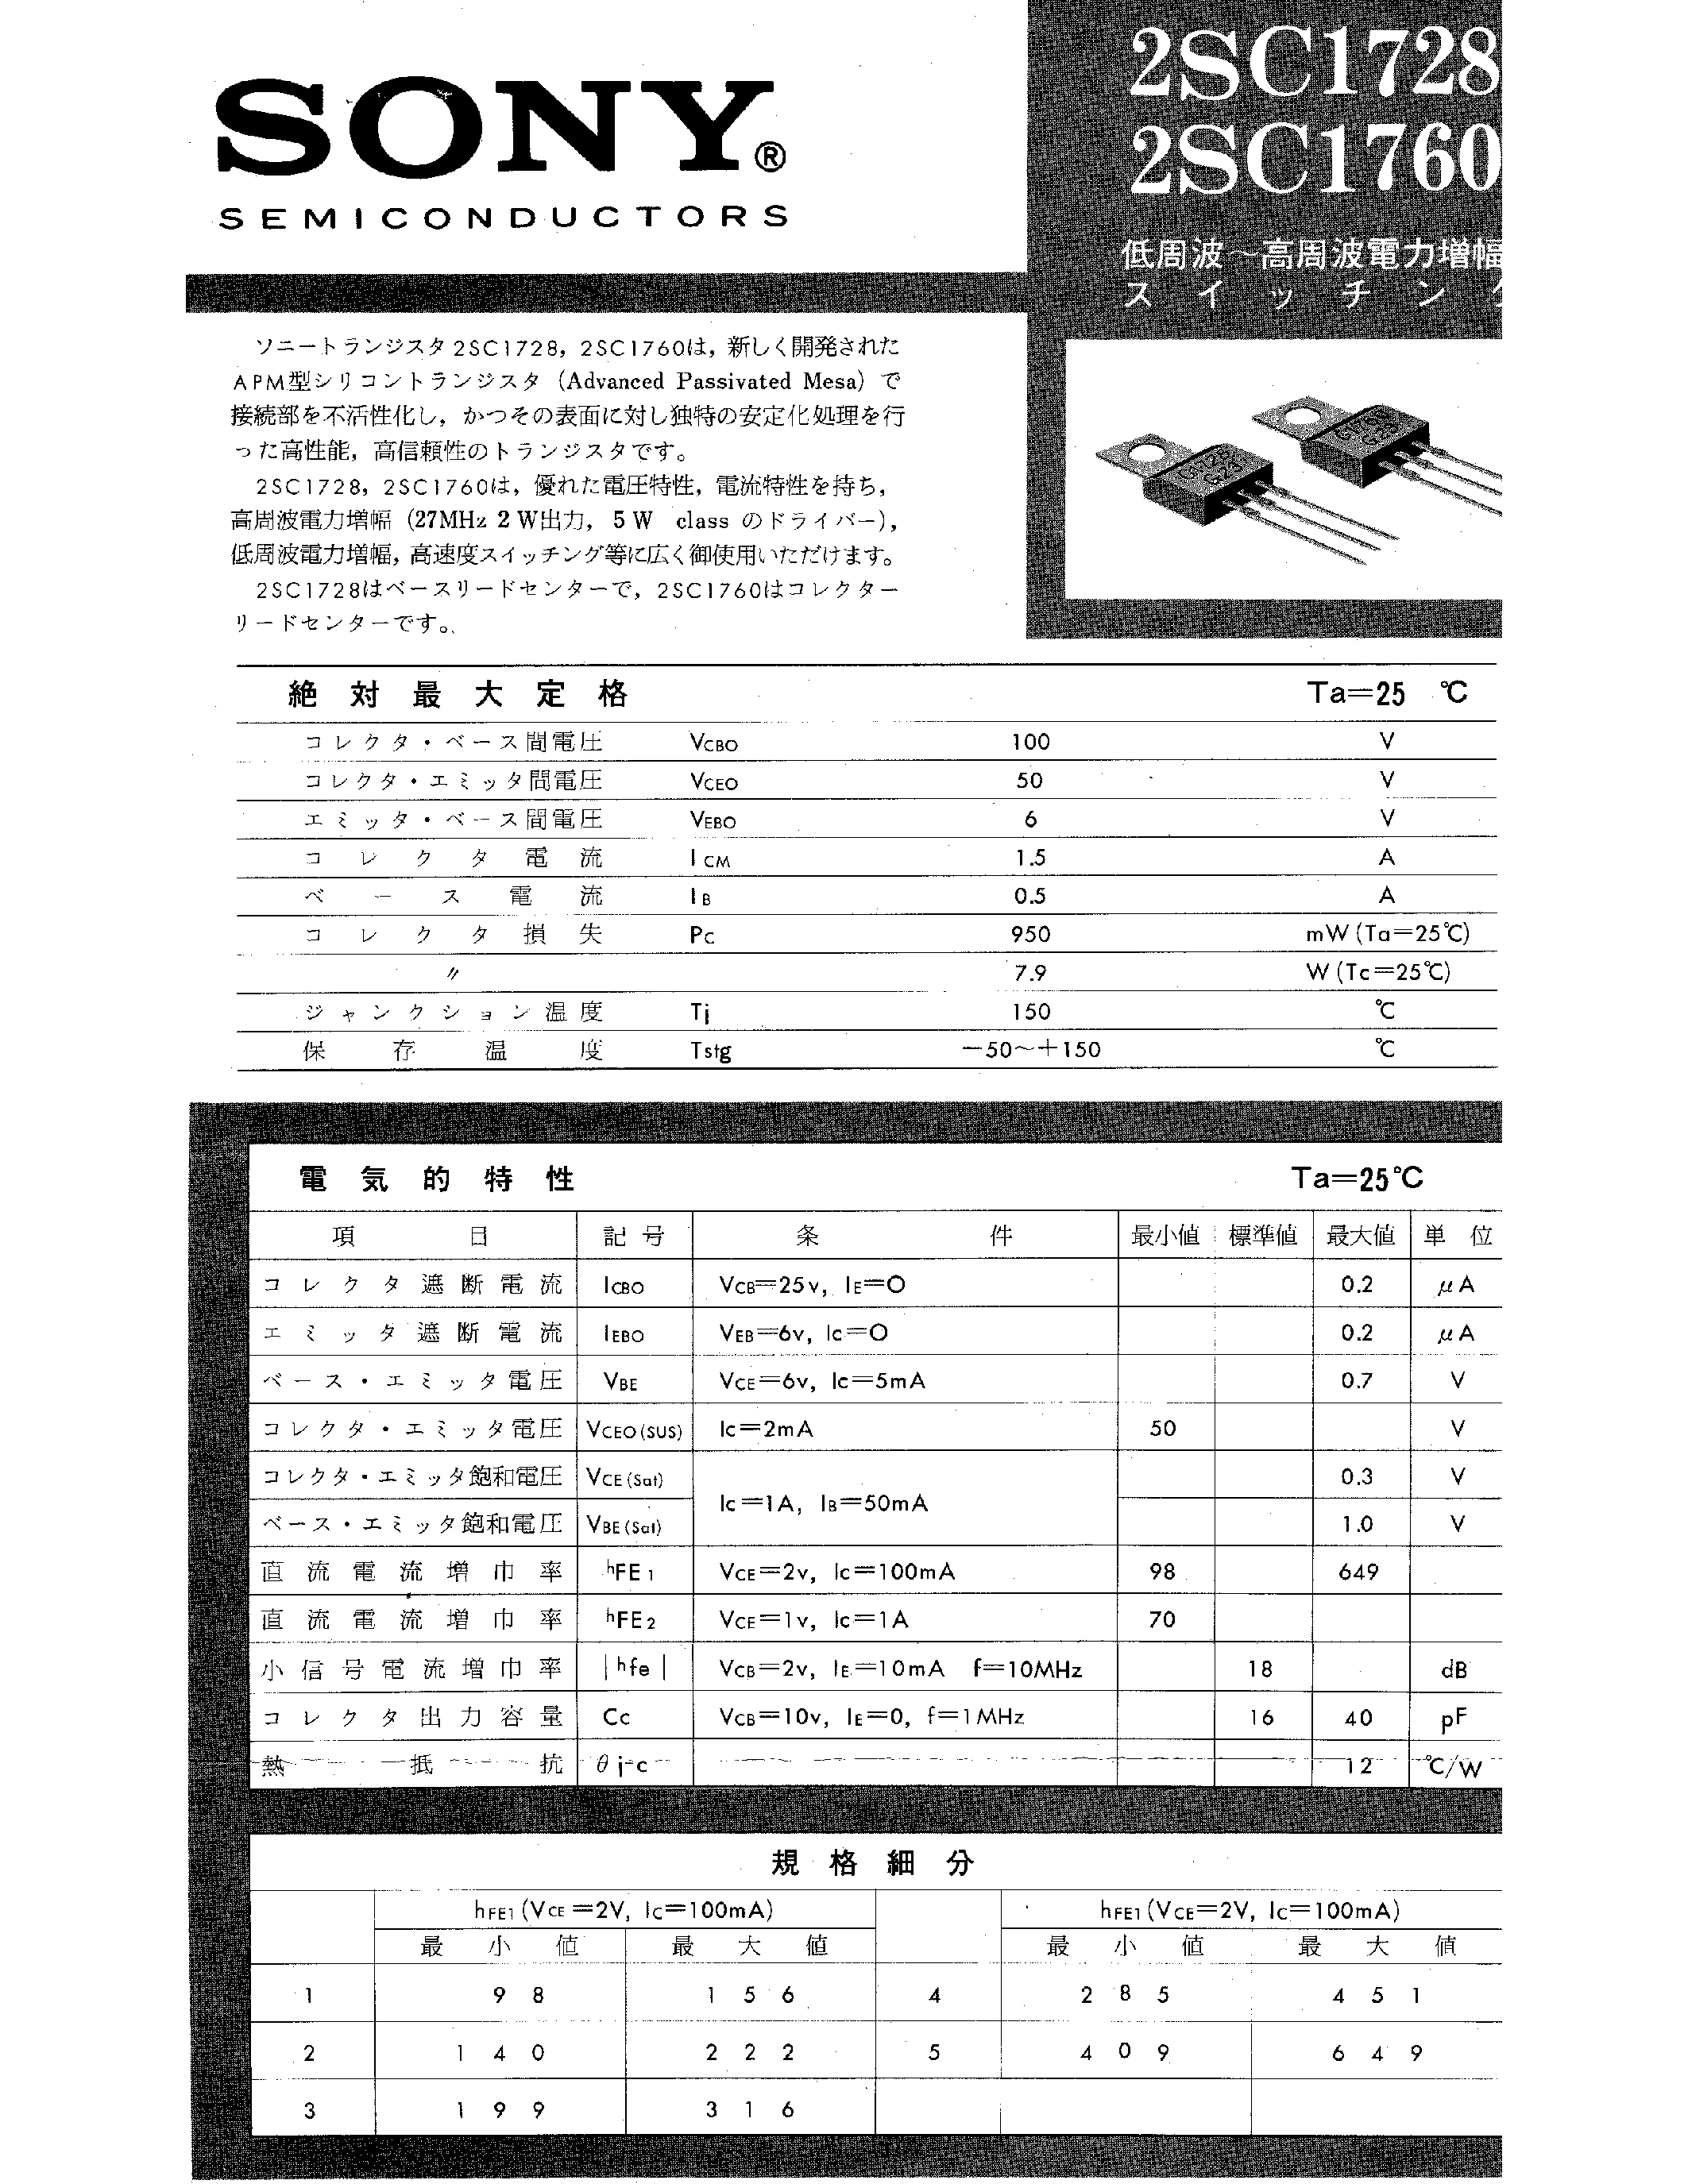 Datasheet 2SC1760 - (2SC1728 / 2SC1760) page 1